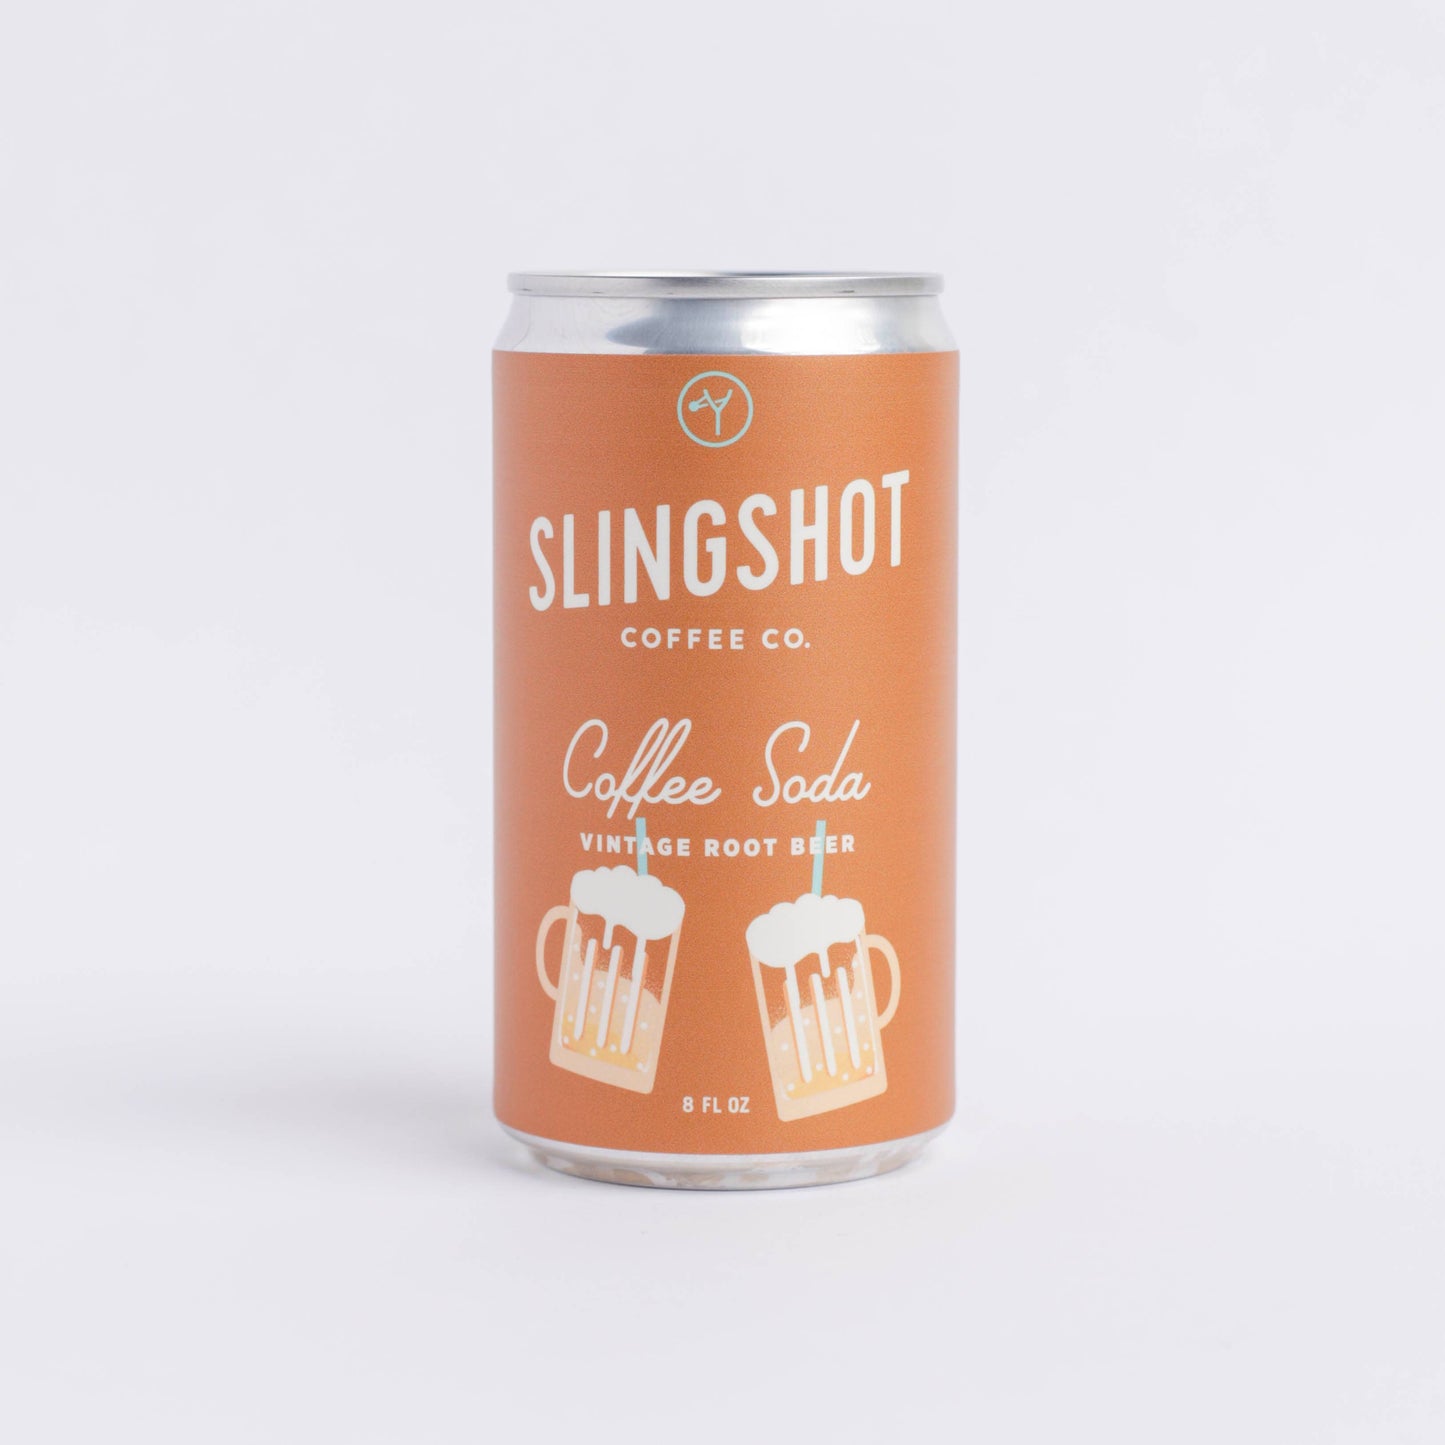 Coffee Soda: Vintage Root Beer by Slingshot Coffee